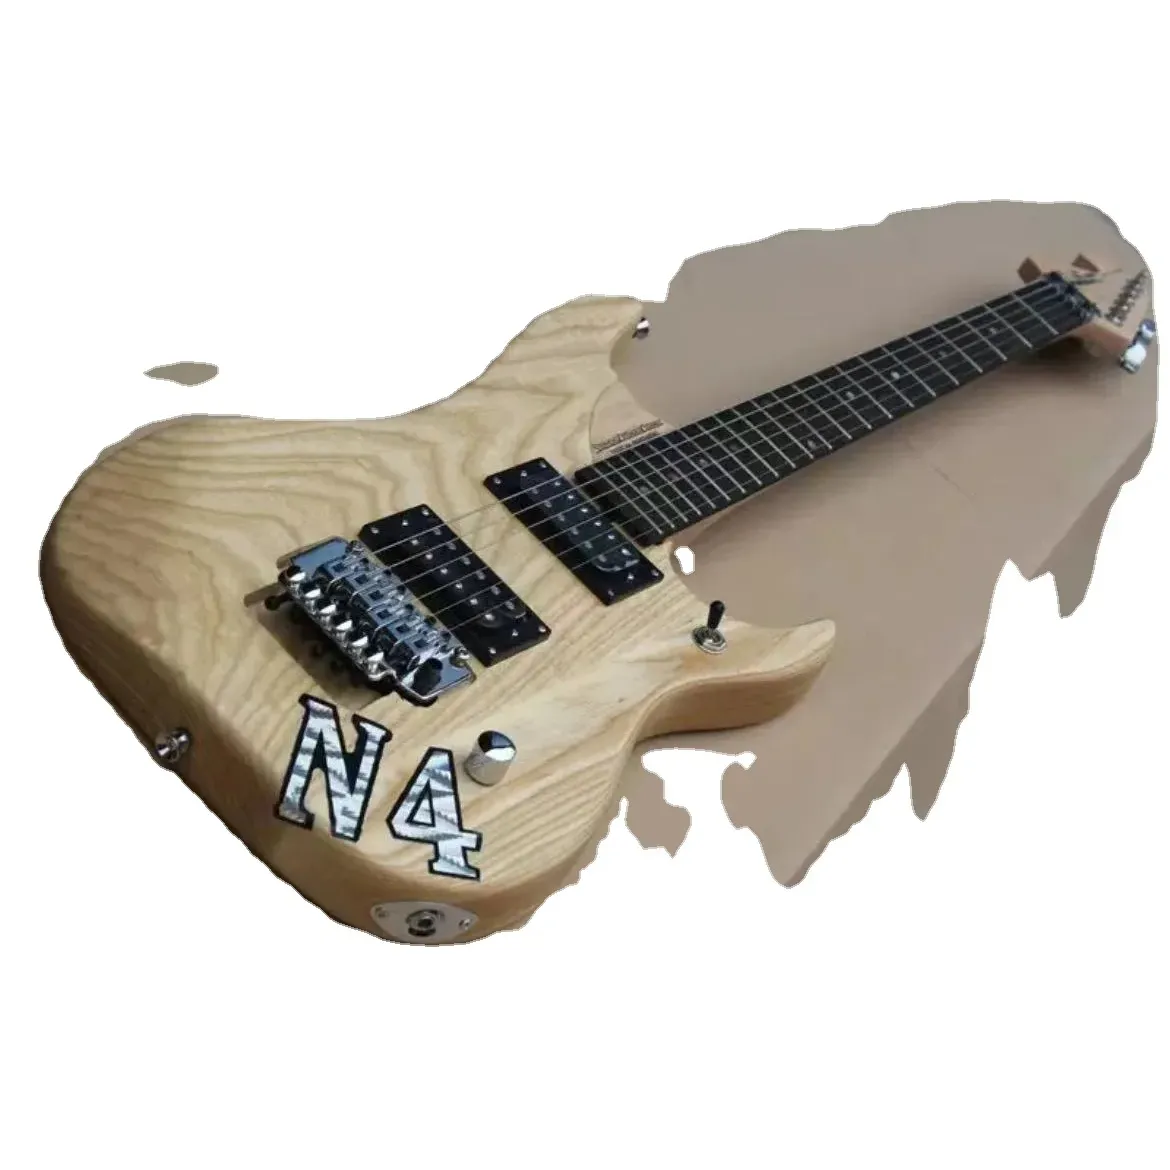 LS Customshop Electric Guitar Mahogany Body HH Pickups FR Bridge Nature